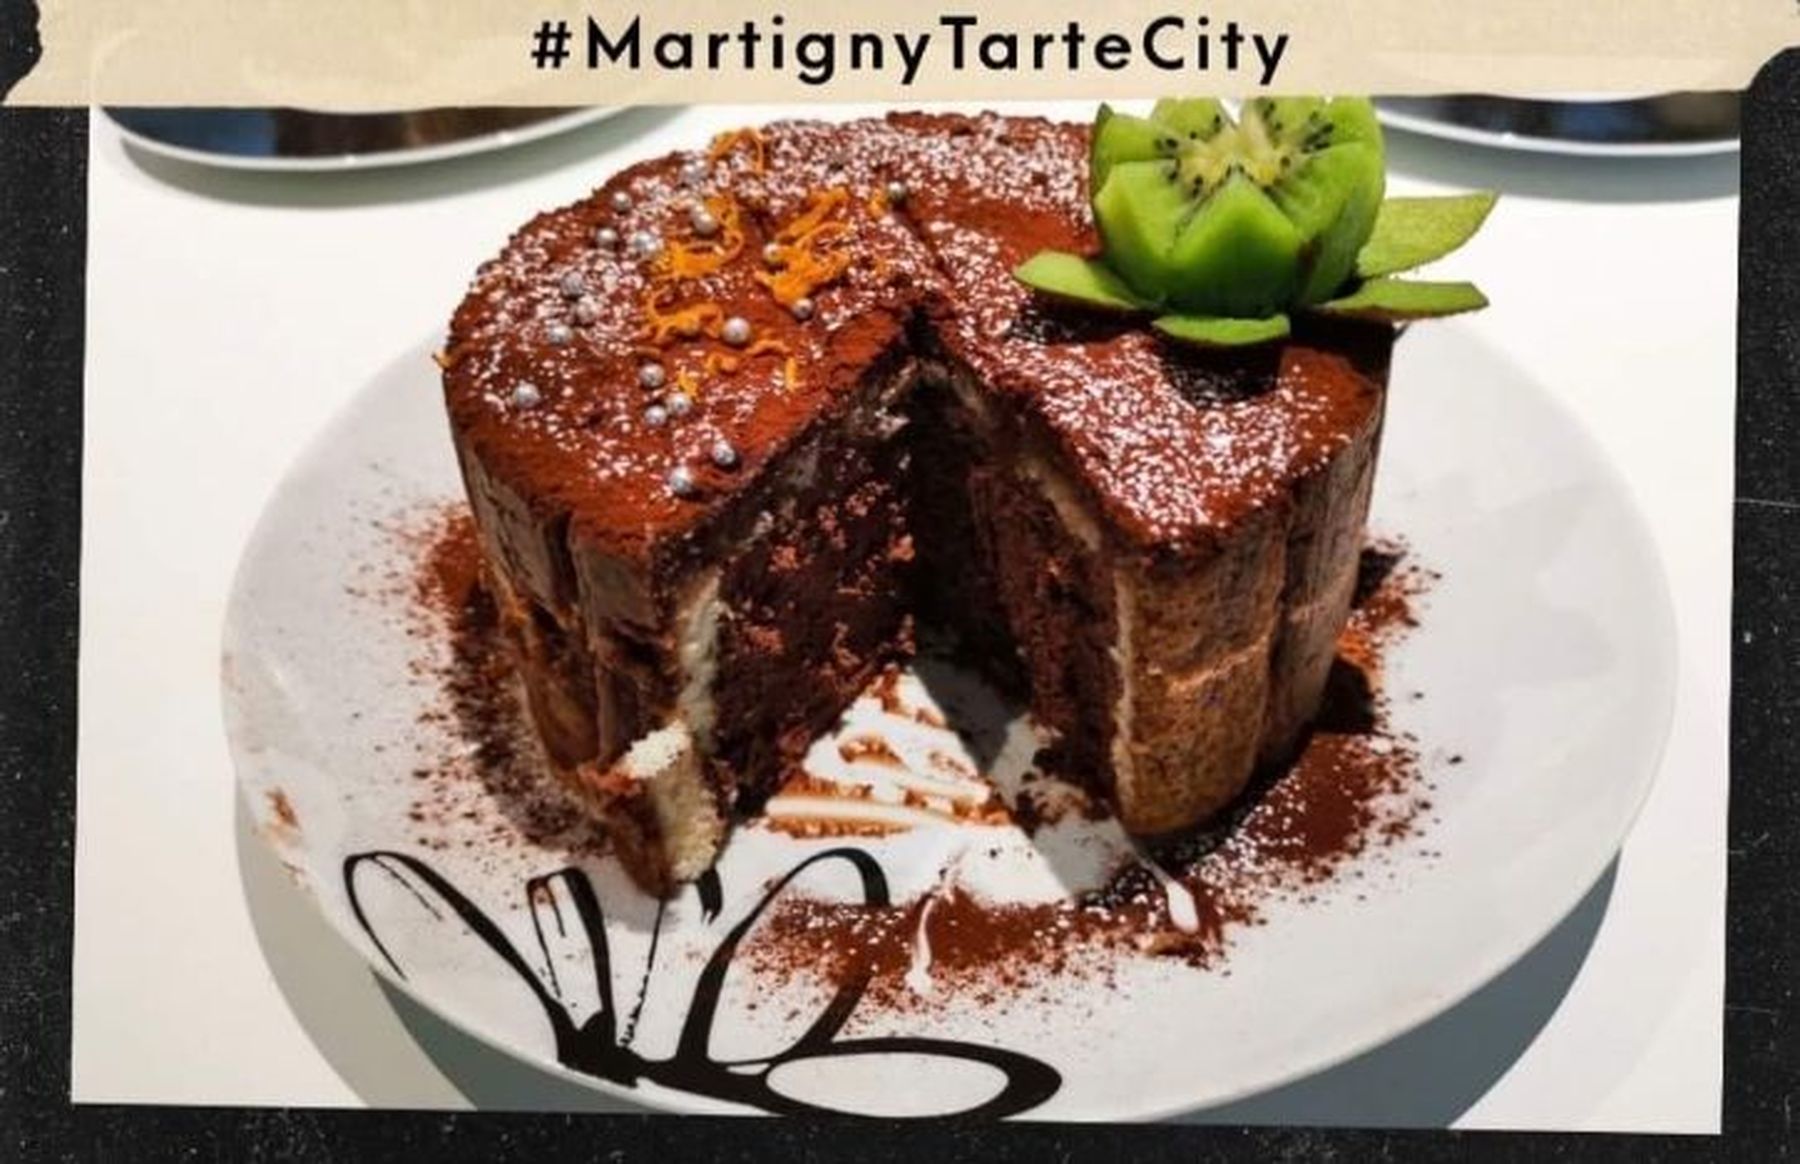 Les pâtissiers amateurs sont invités à composer des desserts sur le thème de la ville de Martigny.